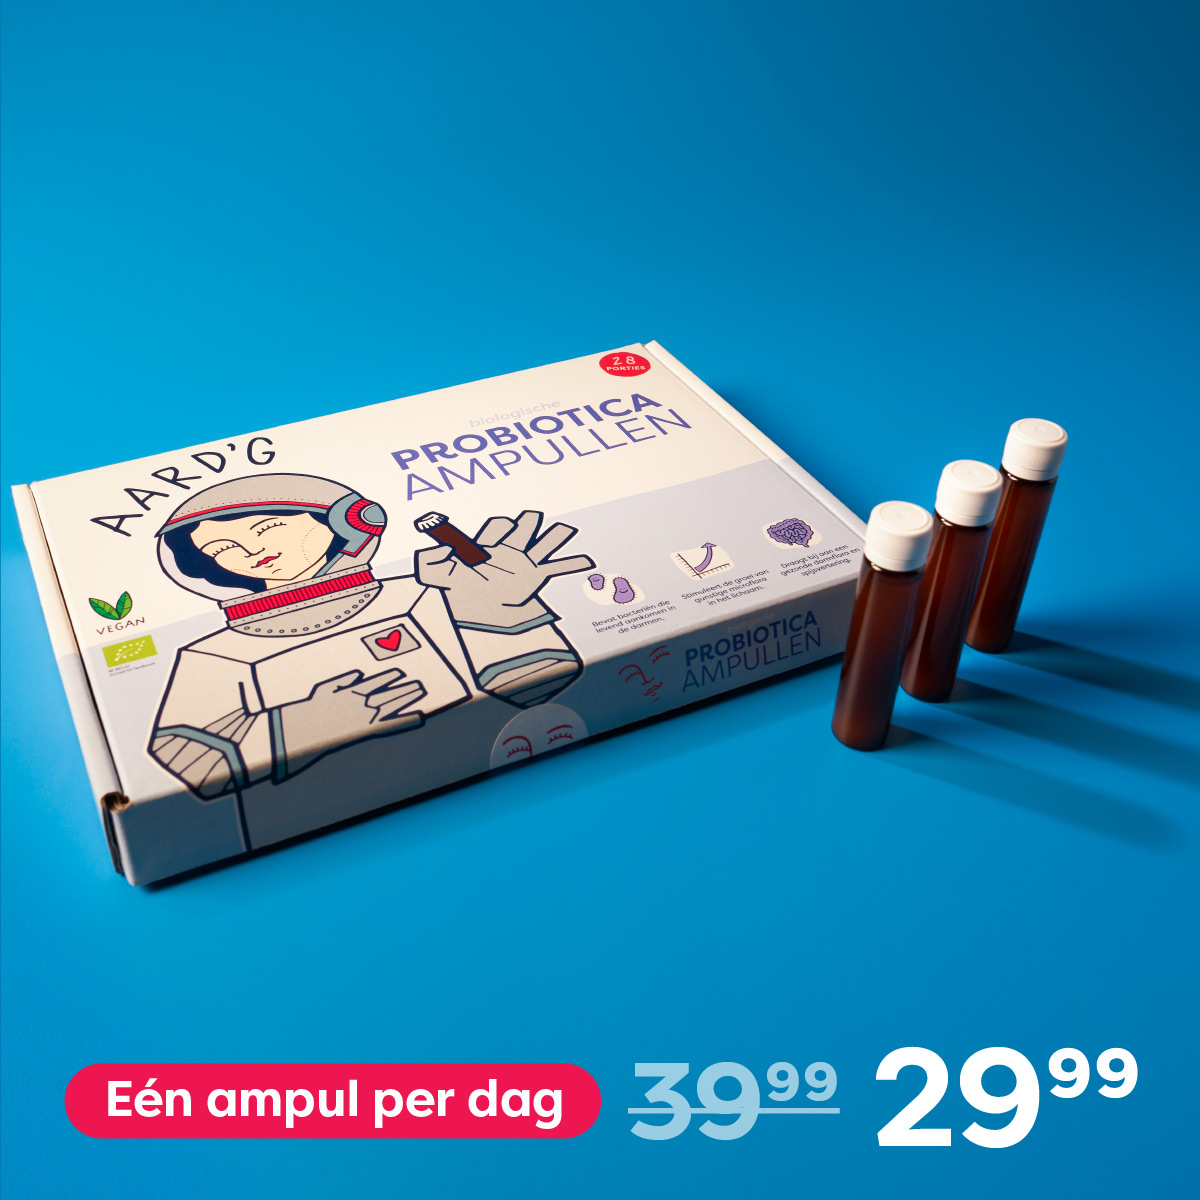 Probiotica Ampullen Abonnement (28x 9ml), één ampul per dag, prijs: 29,99 euro